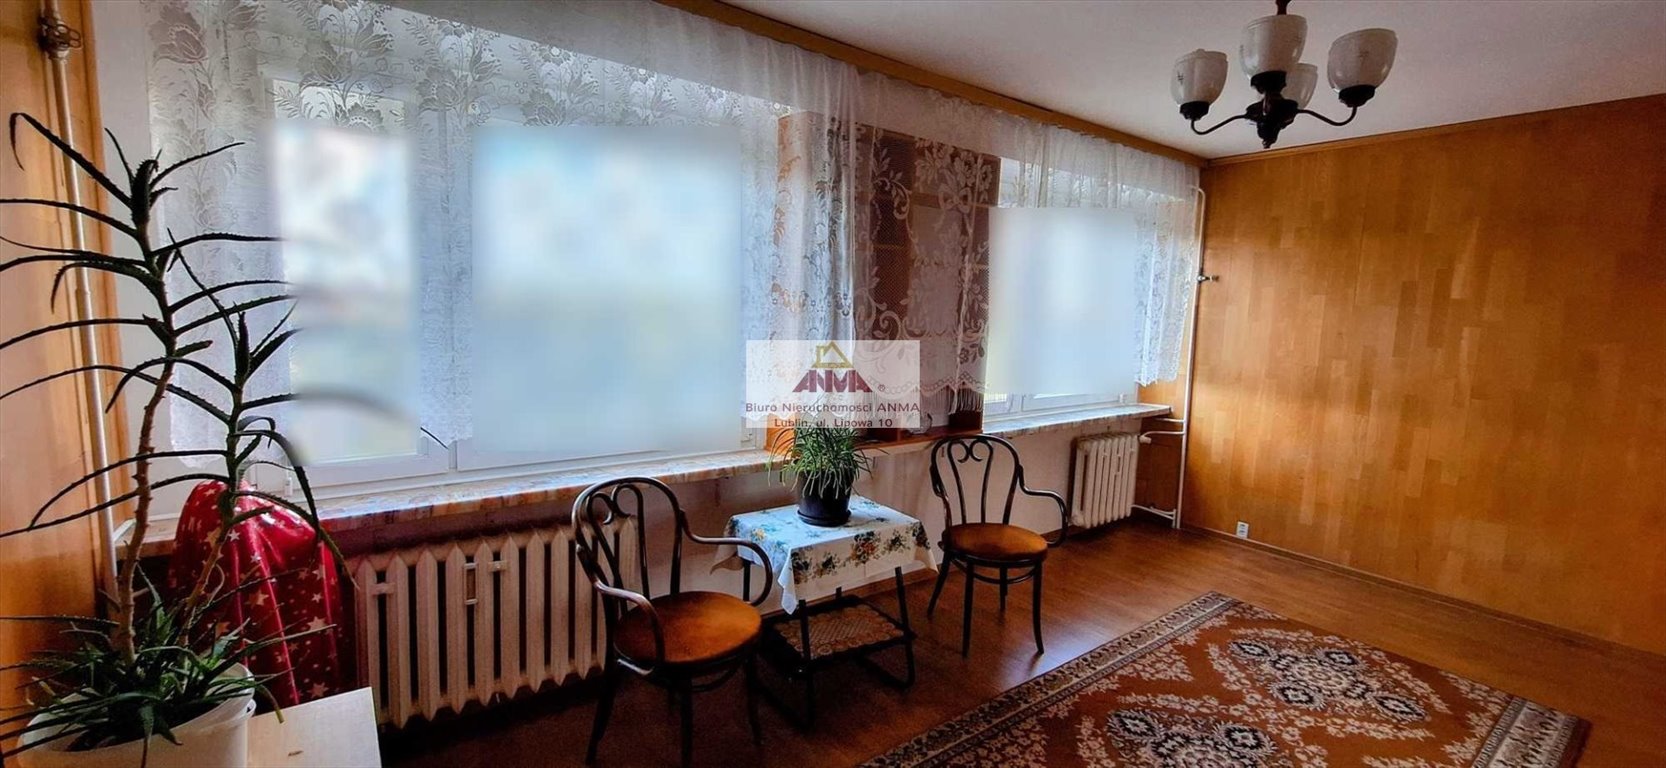 Mieszkanie trzypokojowe na sprzedaż Lublin, Czuby Północne  66m2 Foto 5